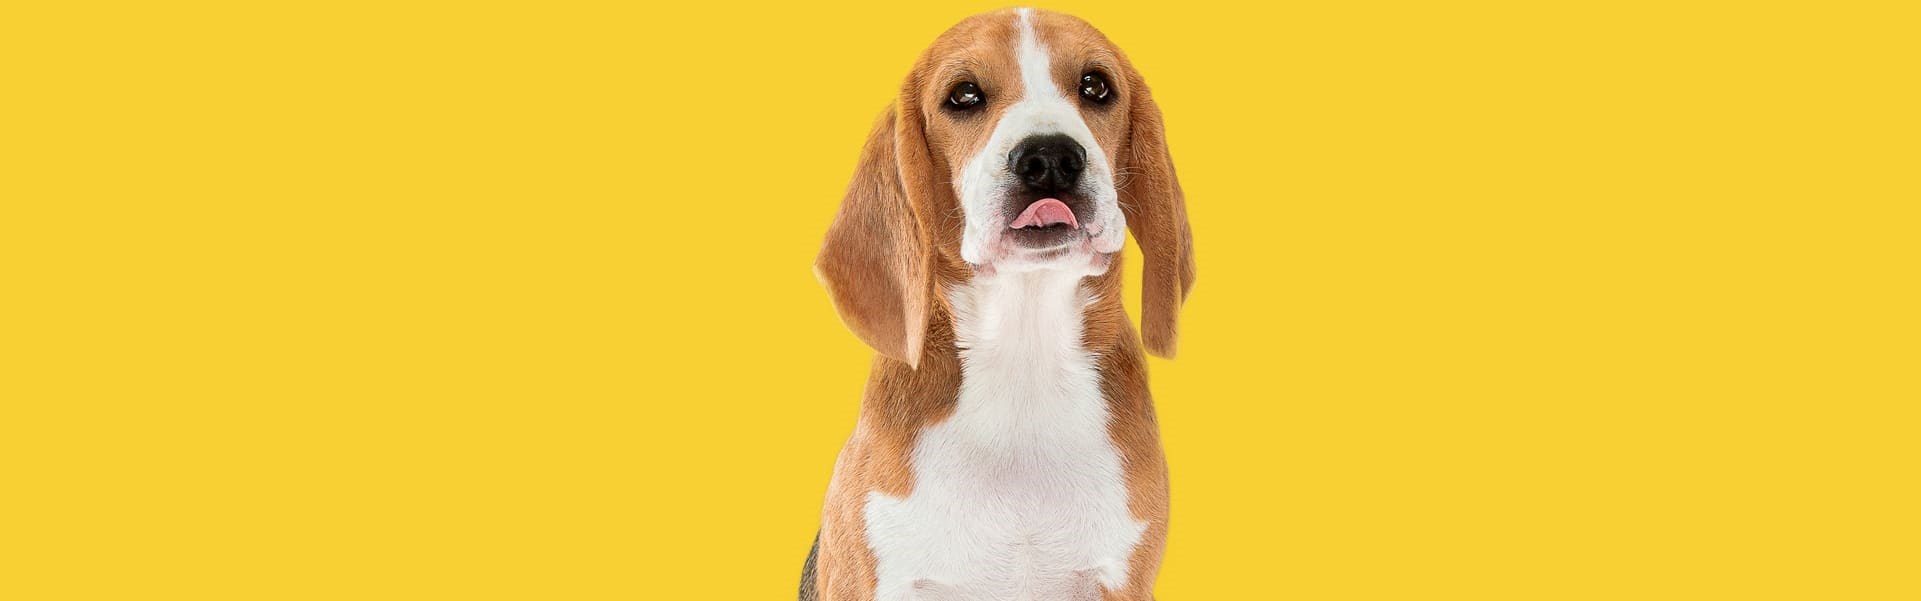 Beagle sentado em um estúdio de fundo amarelo dando uma lambida no nariz